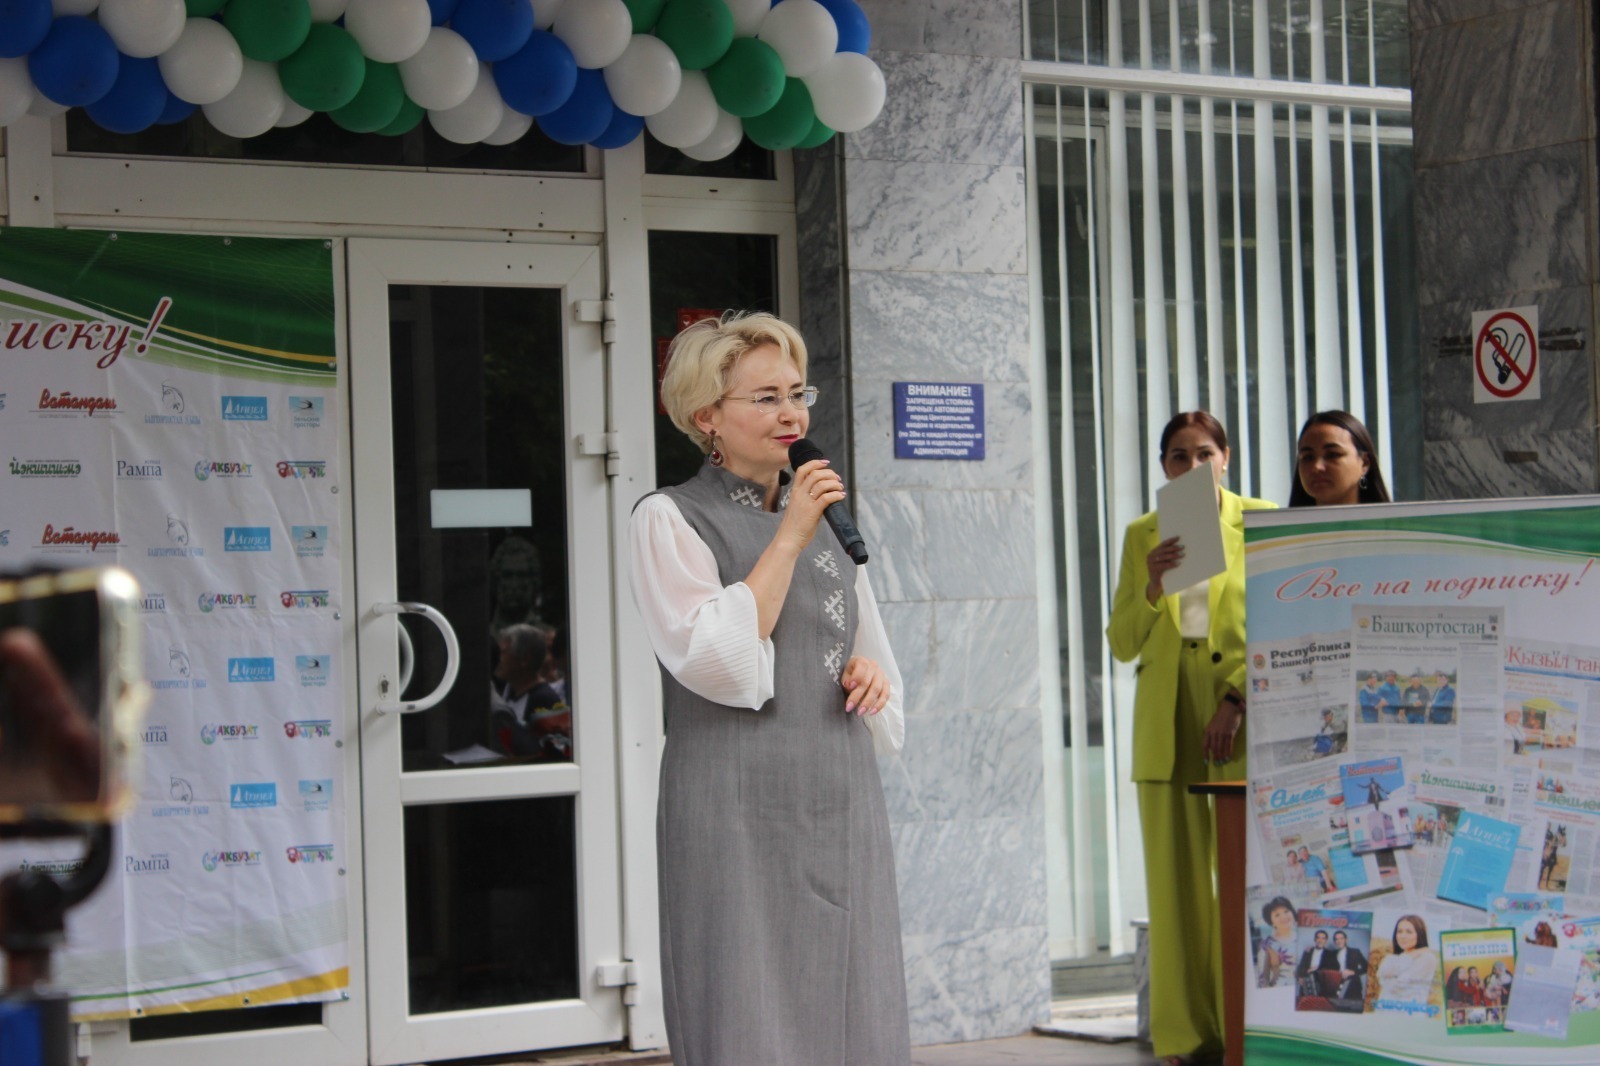 Эльвира Аиткулова: Межвузовский кампус — это большой шаг в развитии образования и науки Башкирии